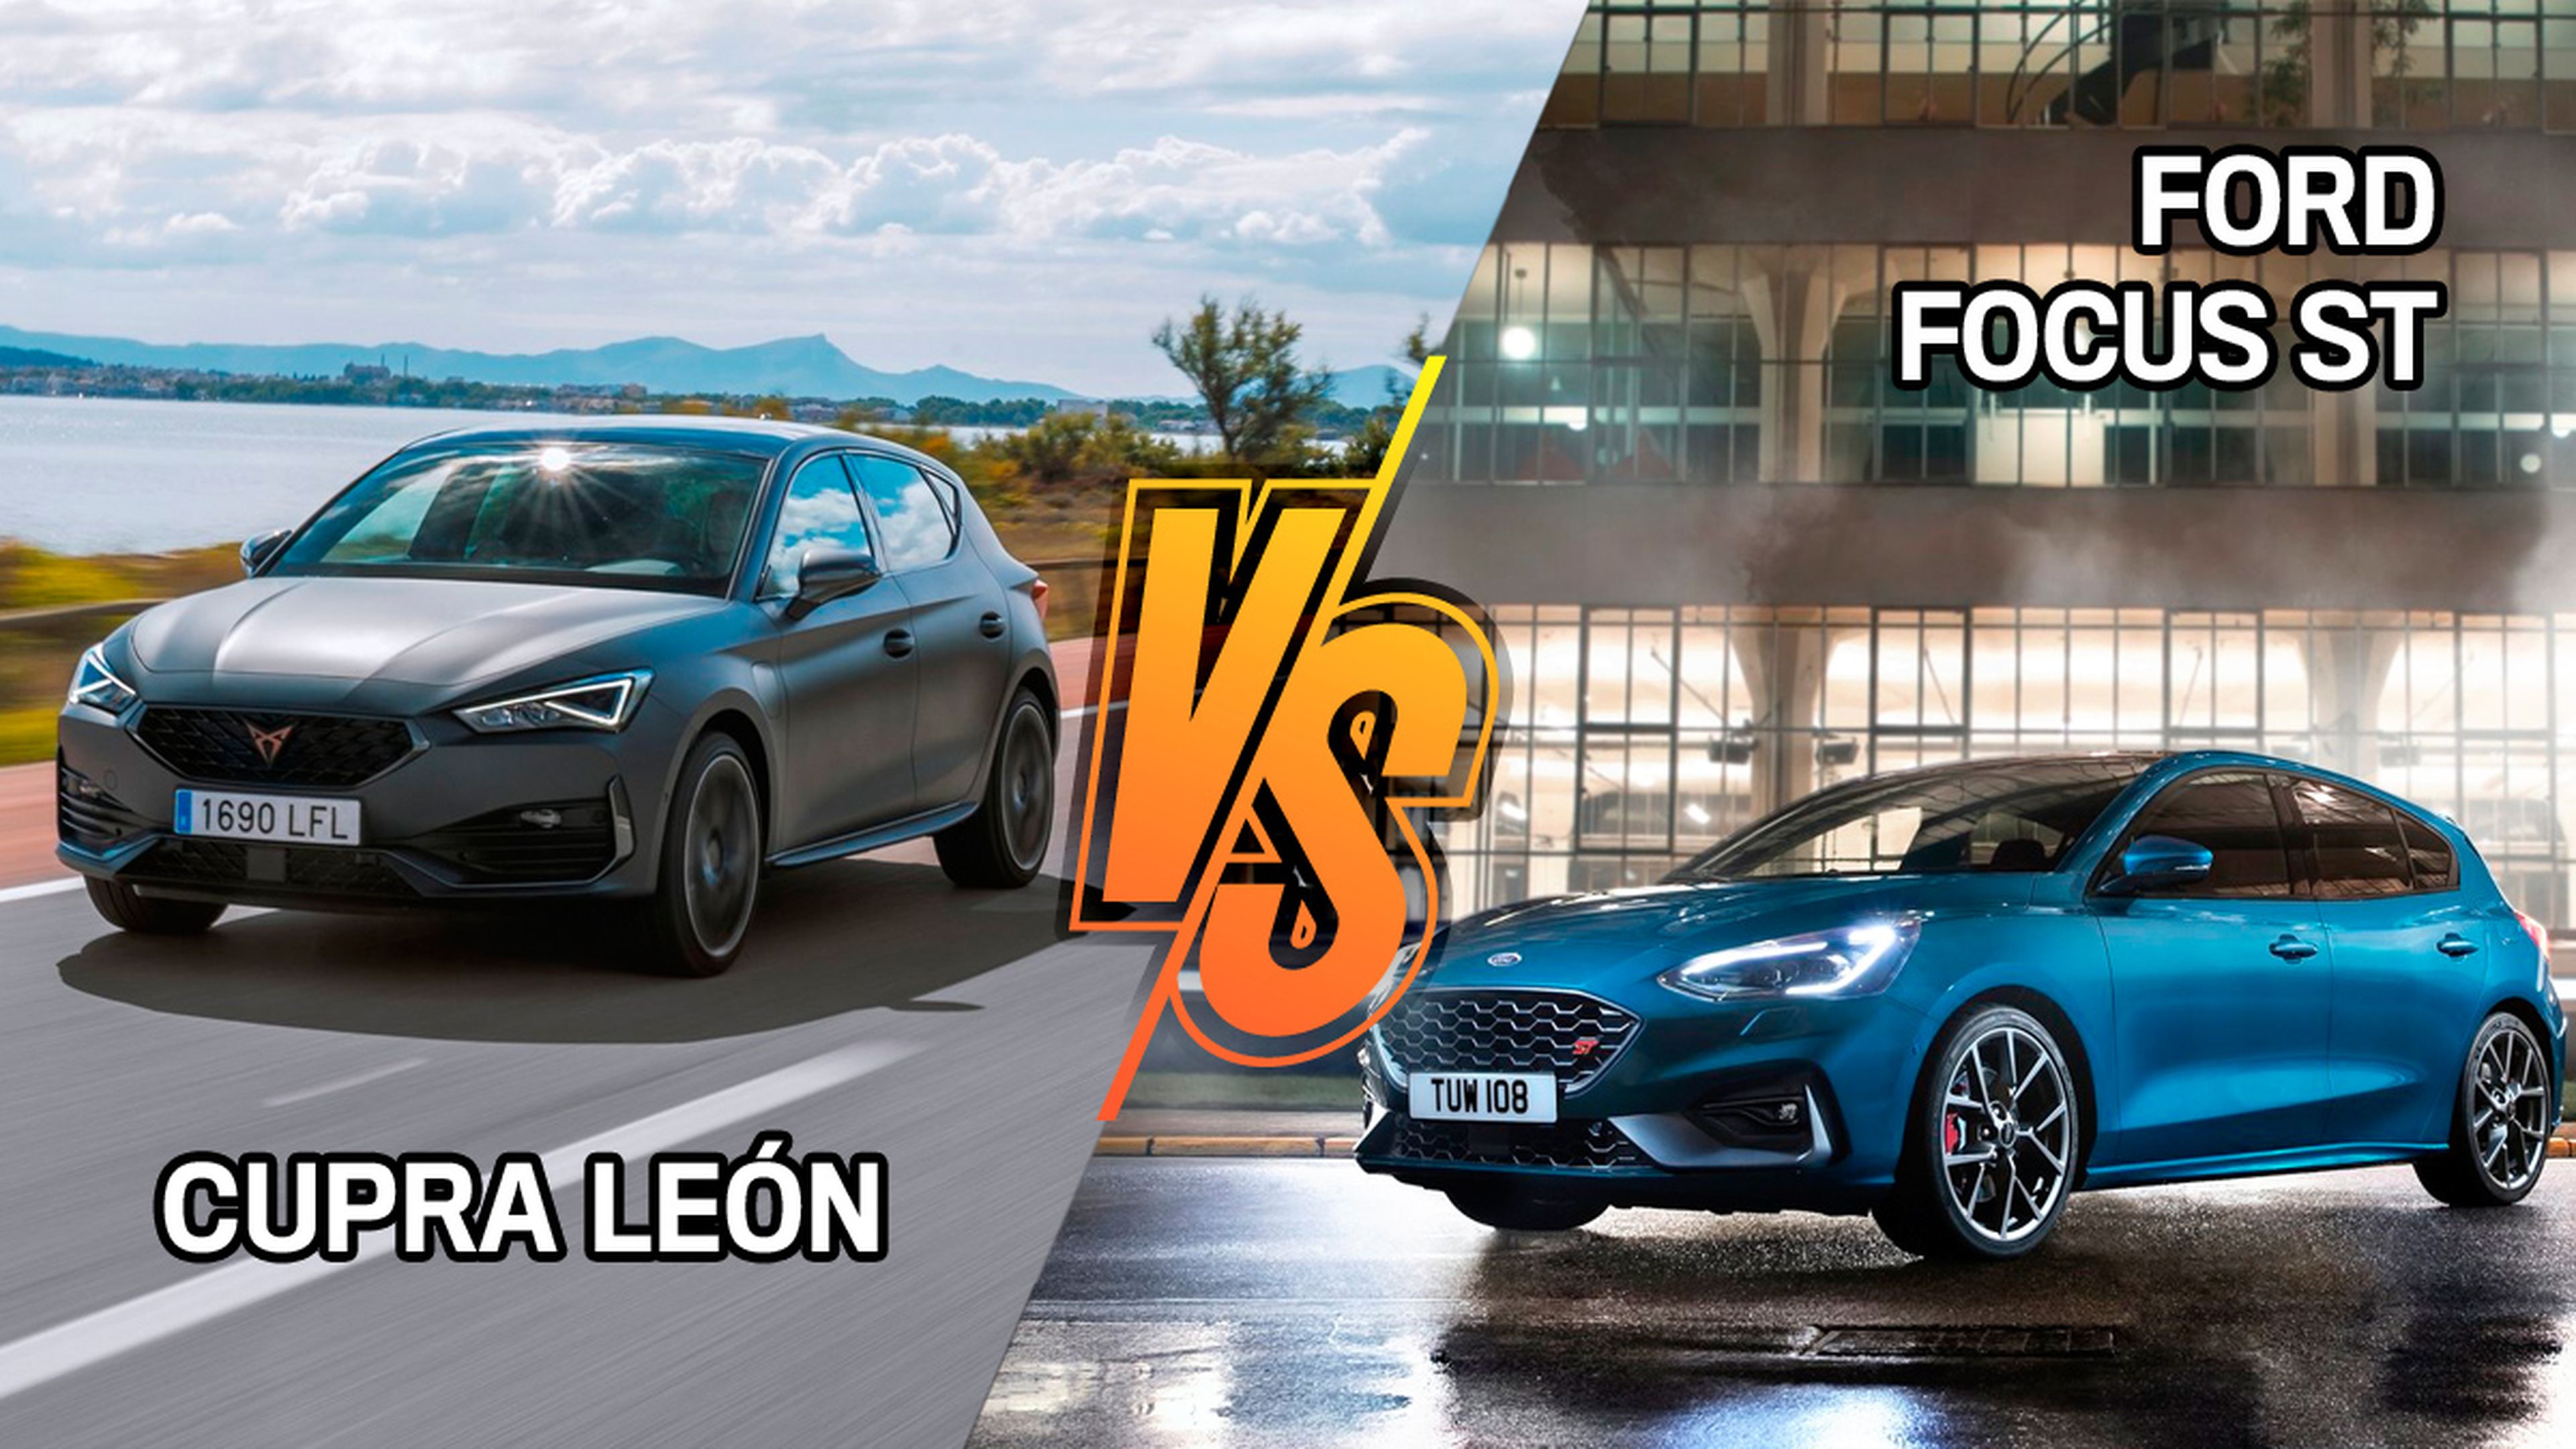 Cupra León o Ford Focus ST, ¿cuál es mejor?